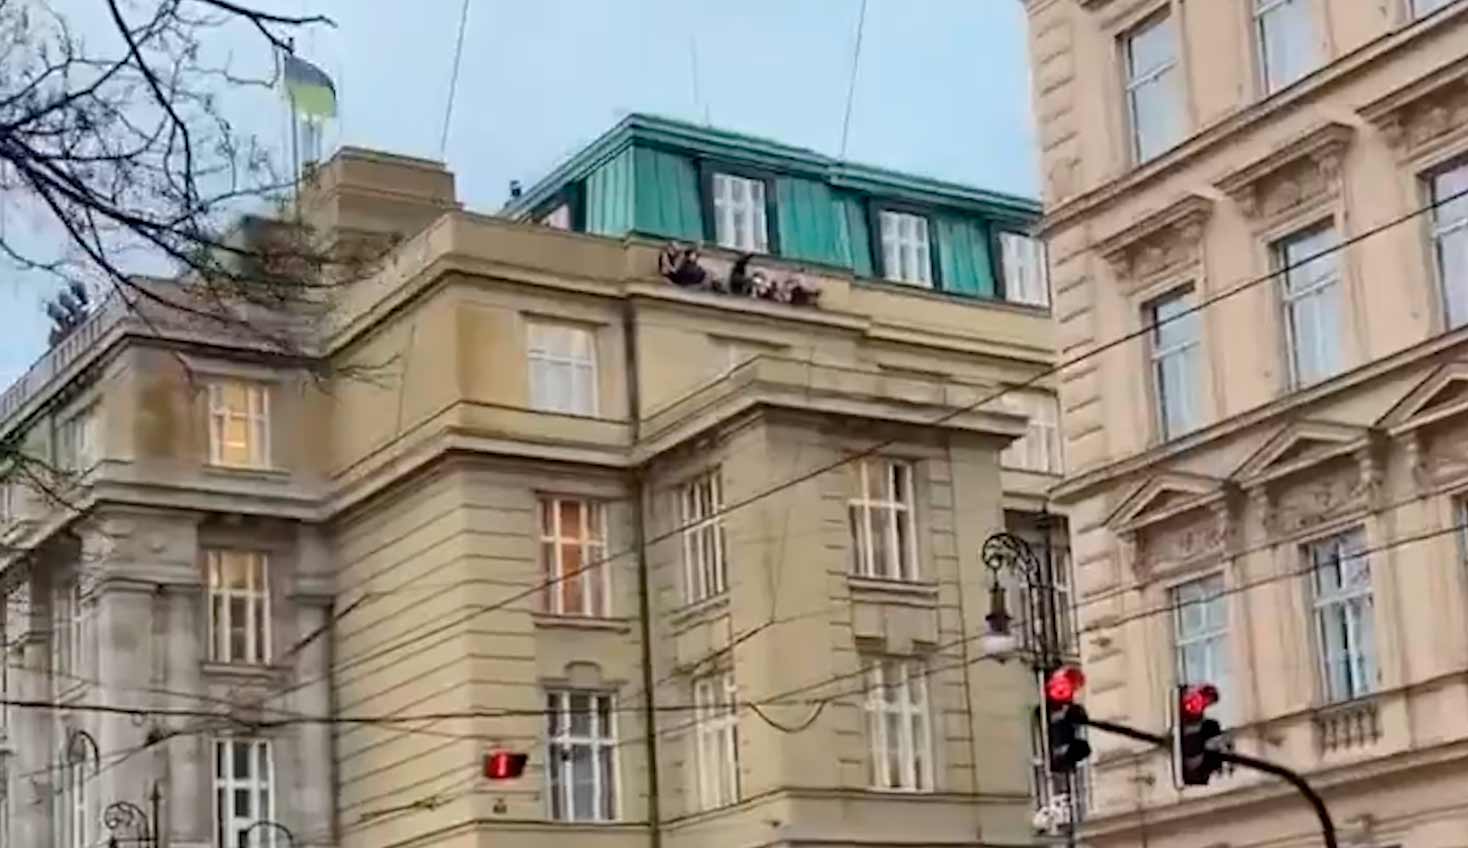 Fusillade à Prague fait 11 morts après qu'un tireur a ouvert le feu dans une université. Photos et vidéo : Reproduction Twitter @BabakTaghvaee1